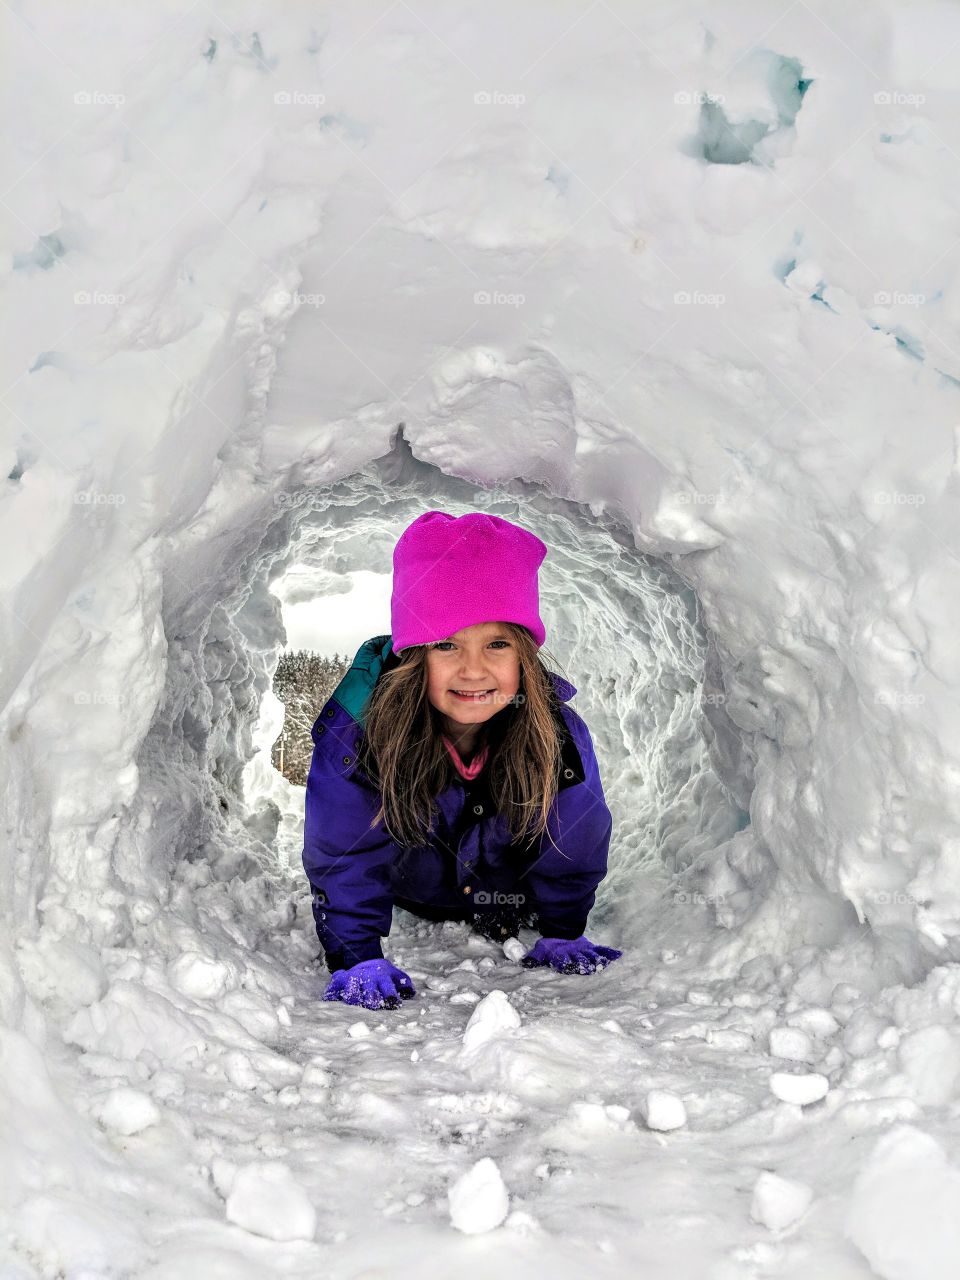 crawling through snow tunnel